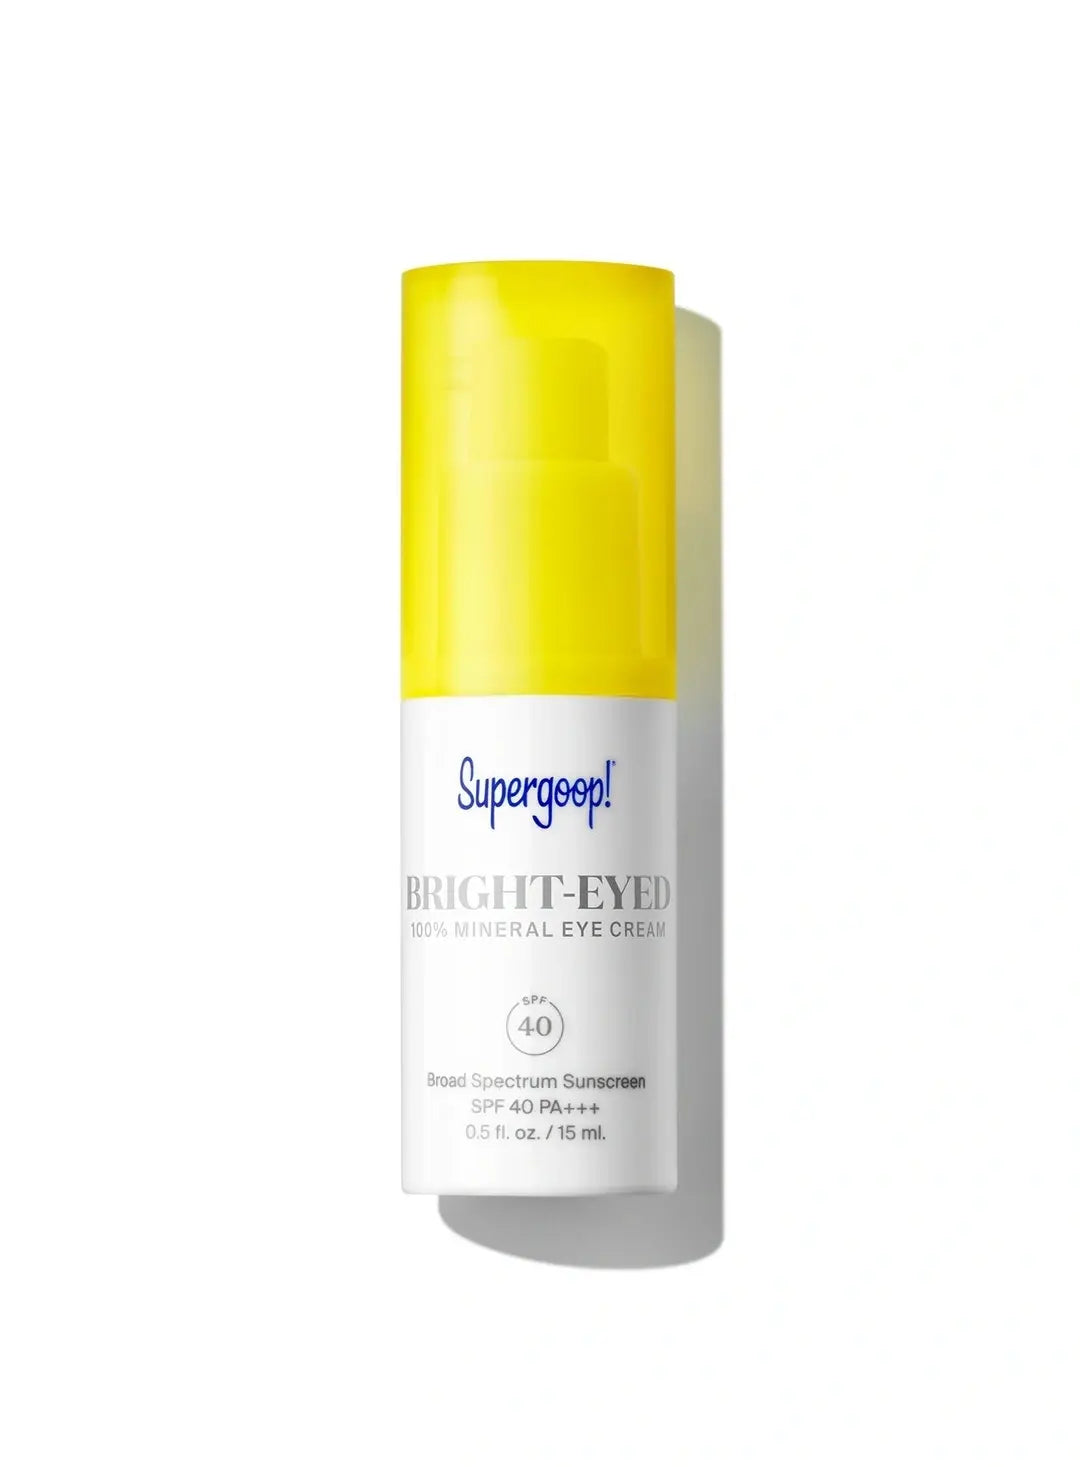 Brighteyed SPF 40 Mineral Eye Cream